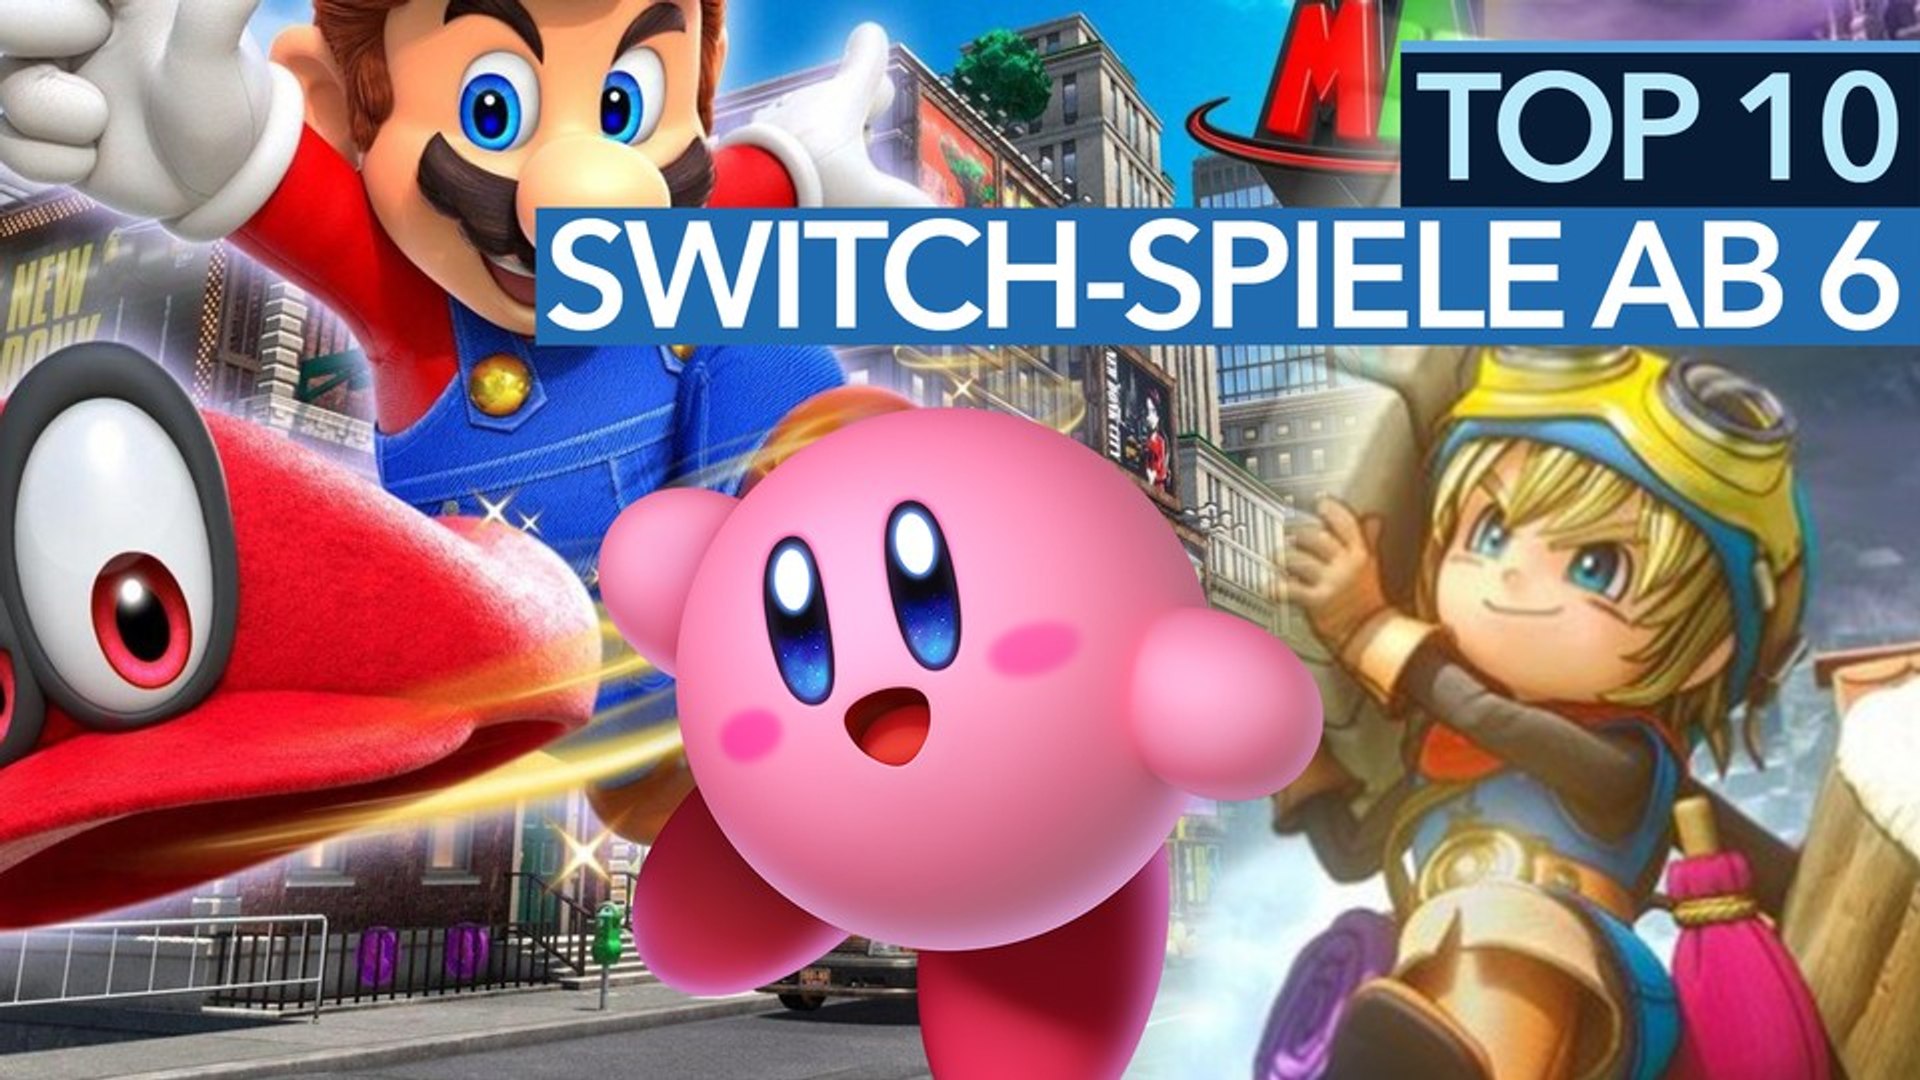 Top 10 Switch-Spiele ab 6 Jahren - Video: Die besten Nintendo-Switch-Spiele  für Kinder - video Dailymotion